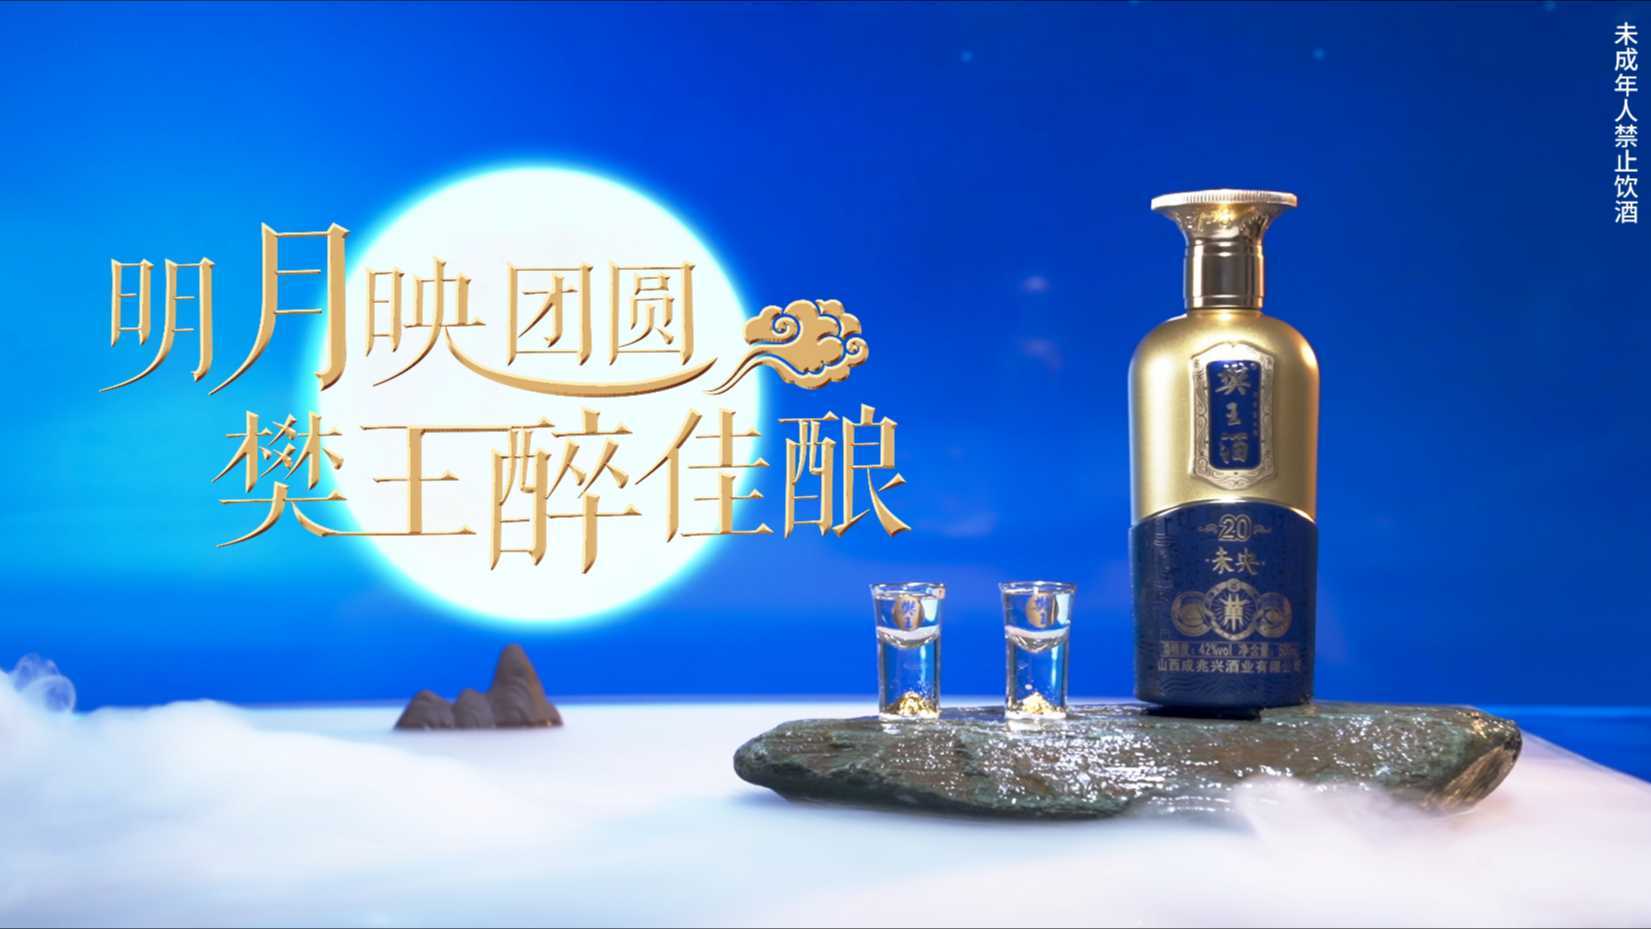 中秋节樊王酒广告